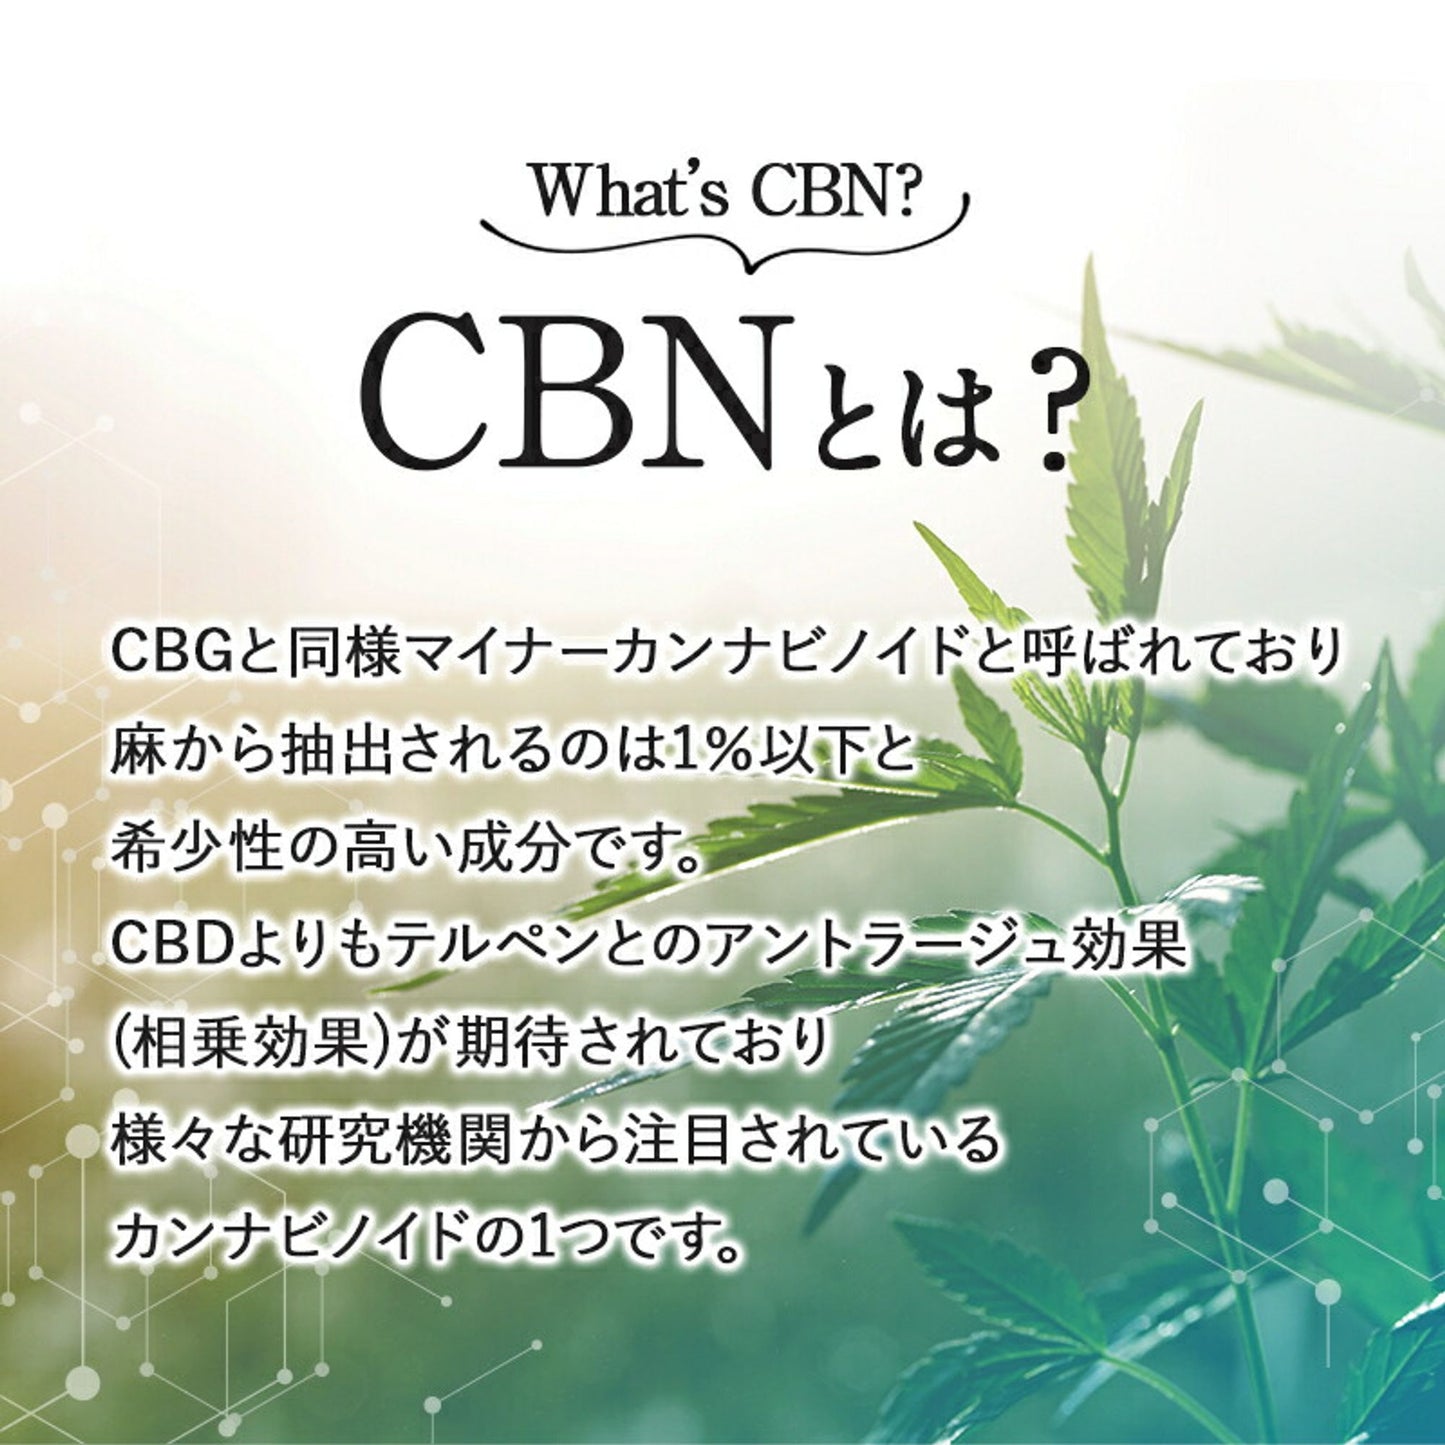 CBD + CBG + CBN 12% オイル 10g ( CBD 600mg CBG 400mg CBN 200mg )